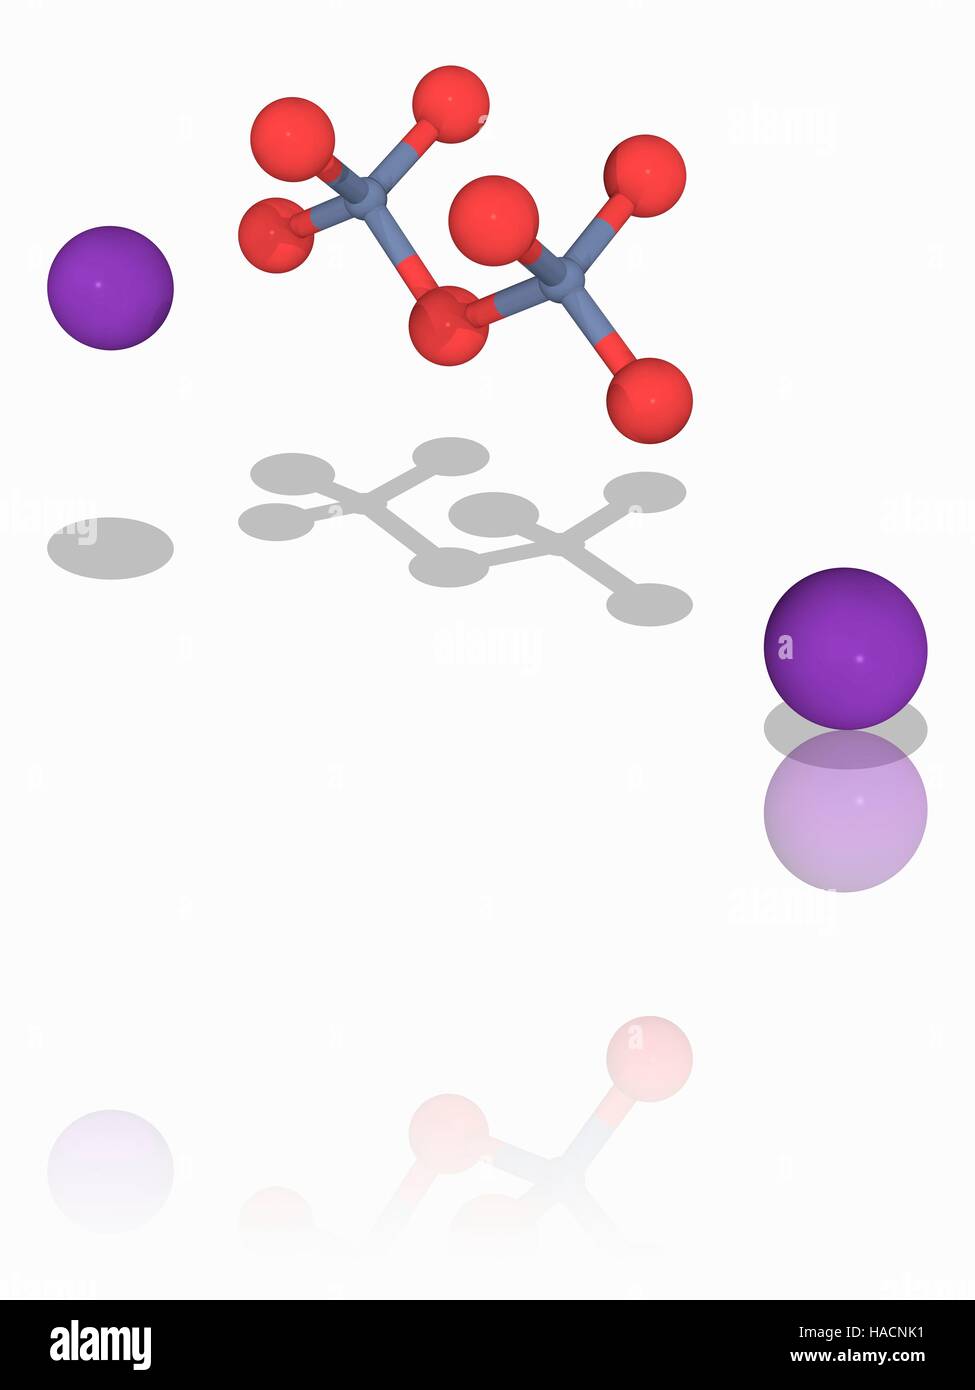 El dicromato de potasio. Modelo molecular del compuesto químico dicromato  de potasio (). Este compuesto iónico es más comúnmente utilizado  como un agente oxidante. Tiene un color rojo-naranja, y también se utiliza